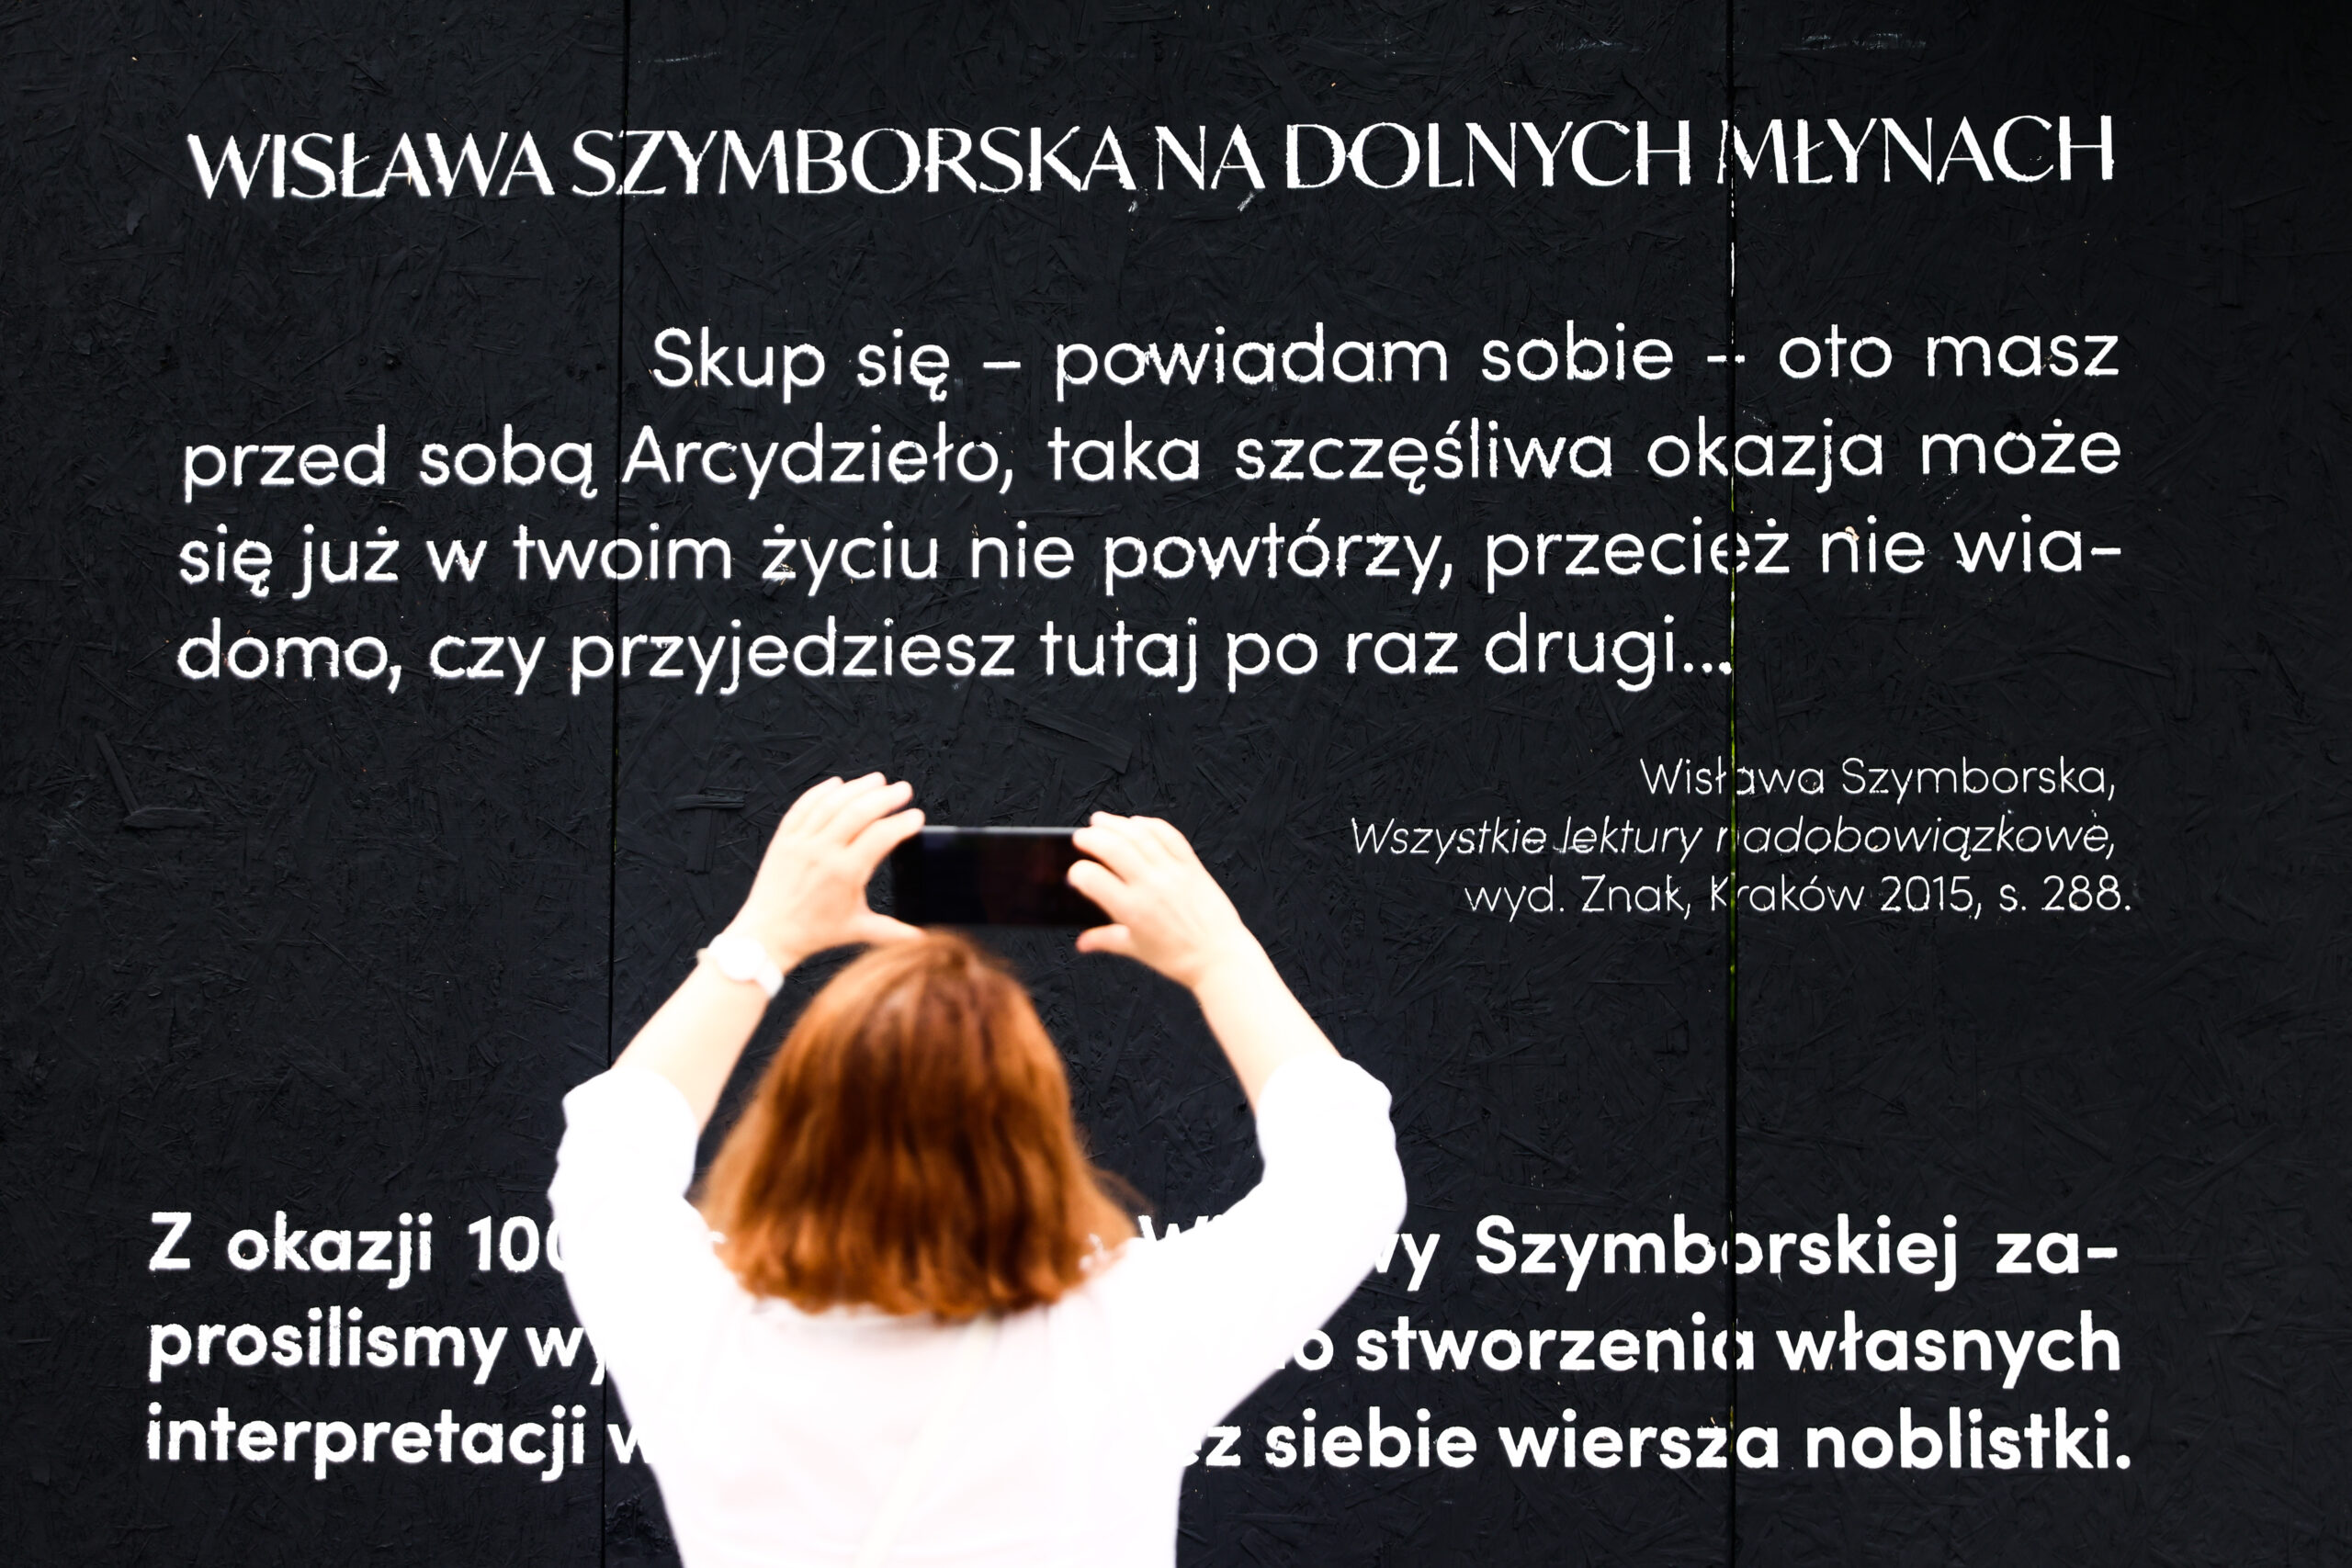 Liternictwo na muralu poświęconego Wisławie Szymborskiej.